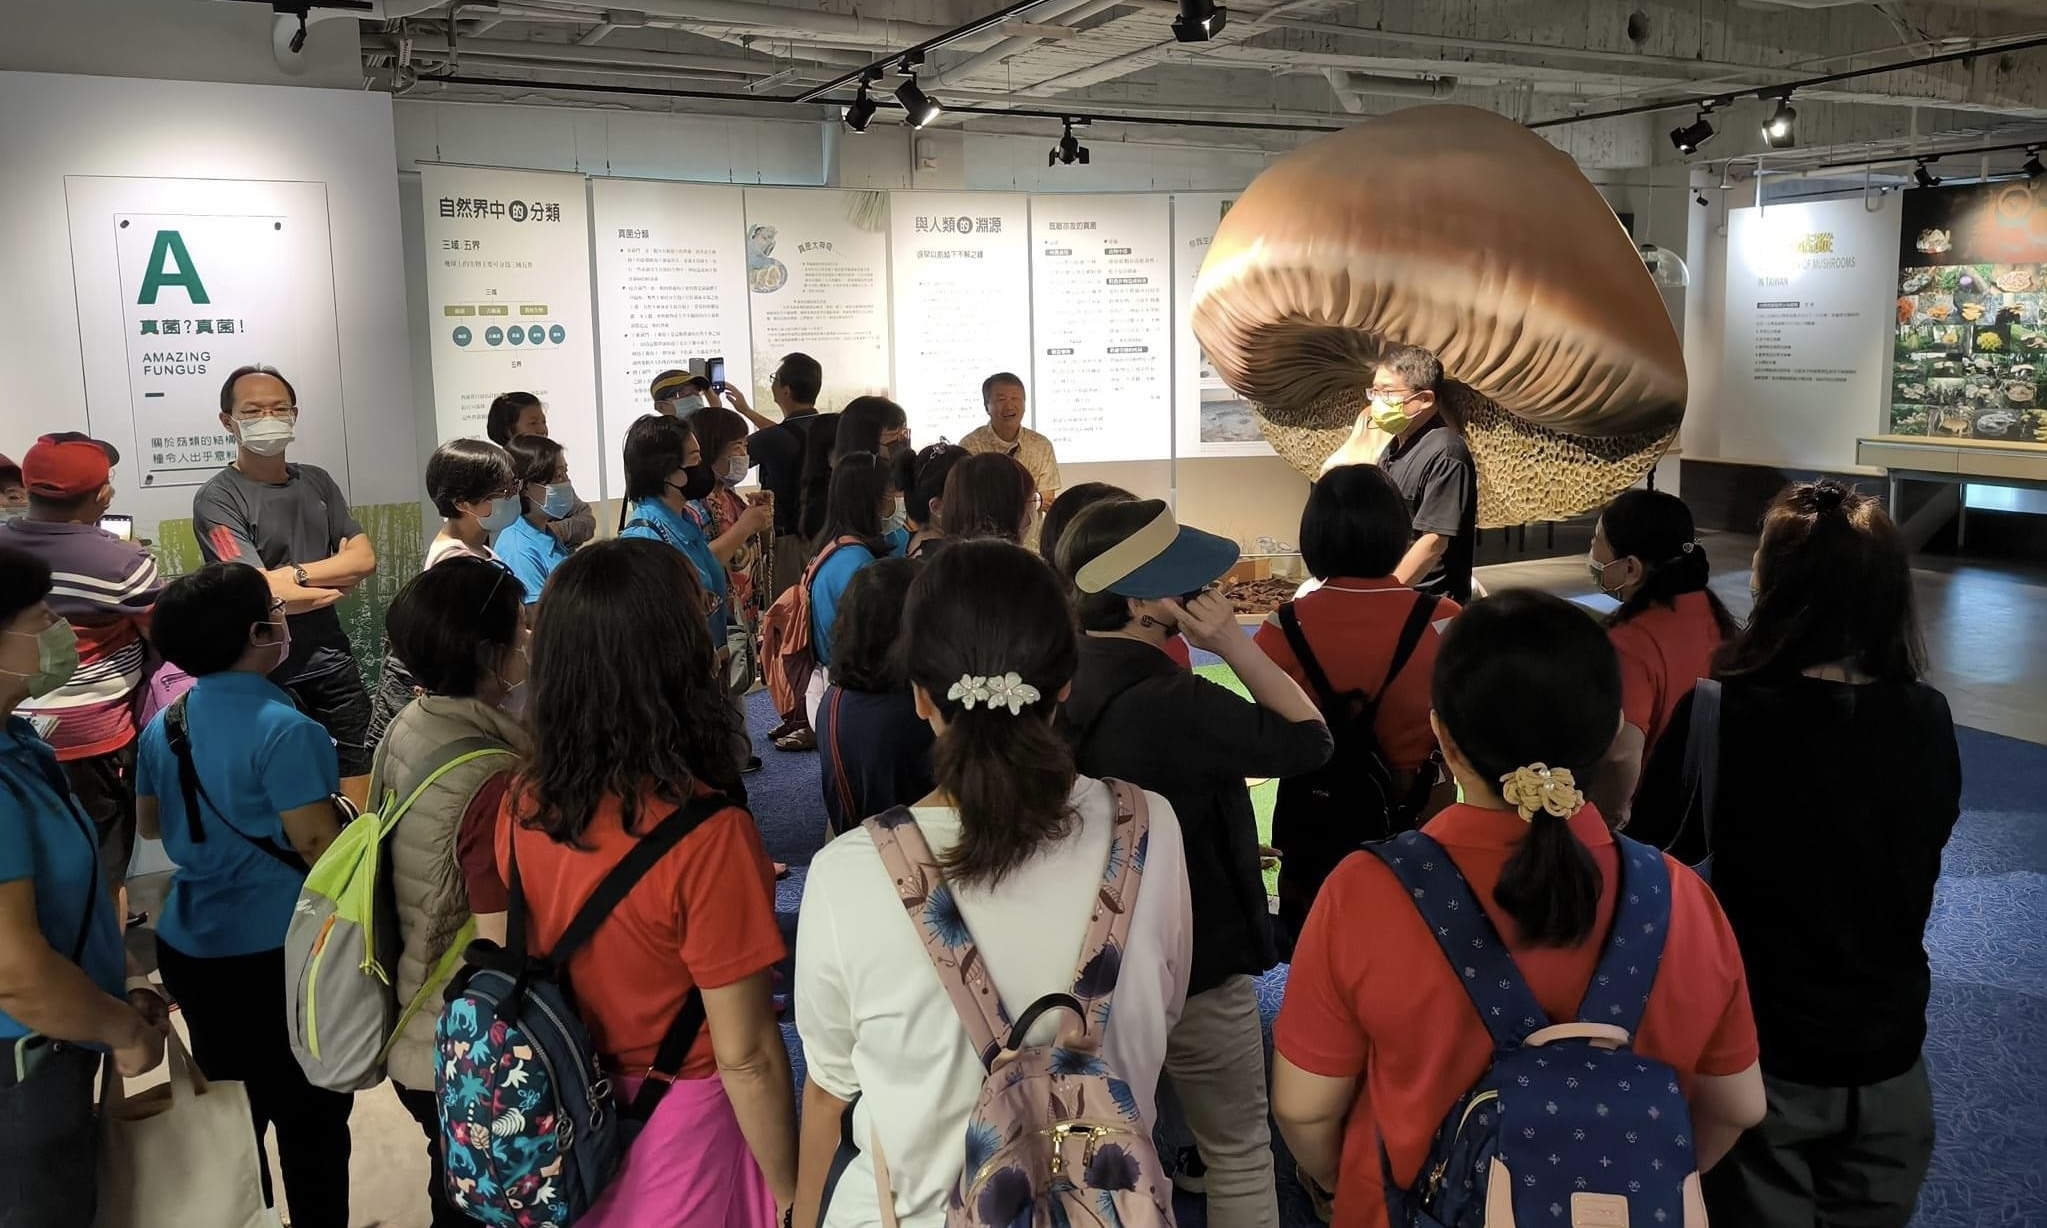 林銘聰》全世界唯二的「菇類博物館」在臺灣